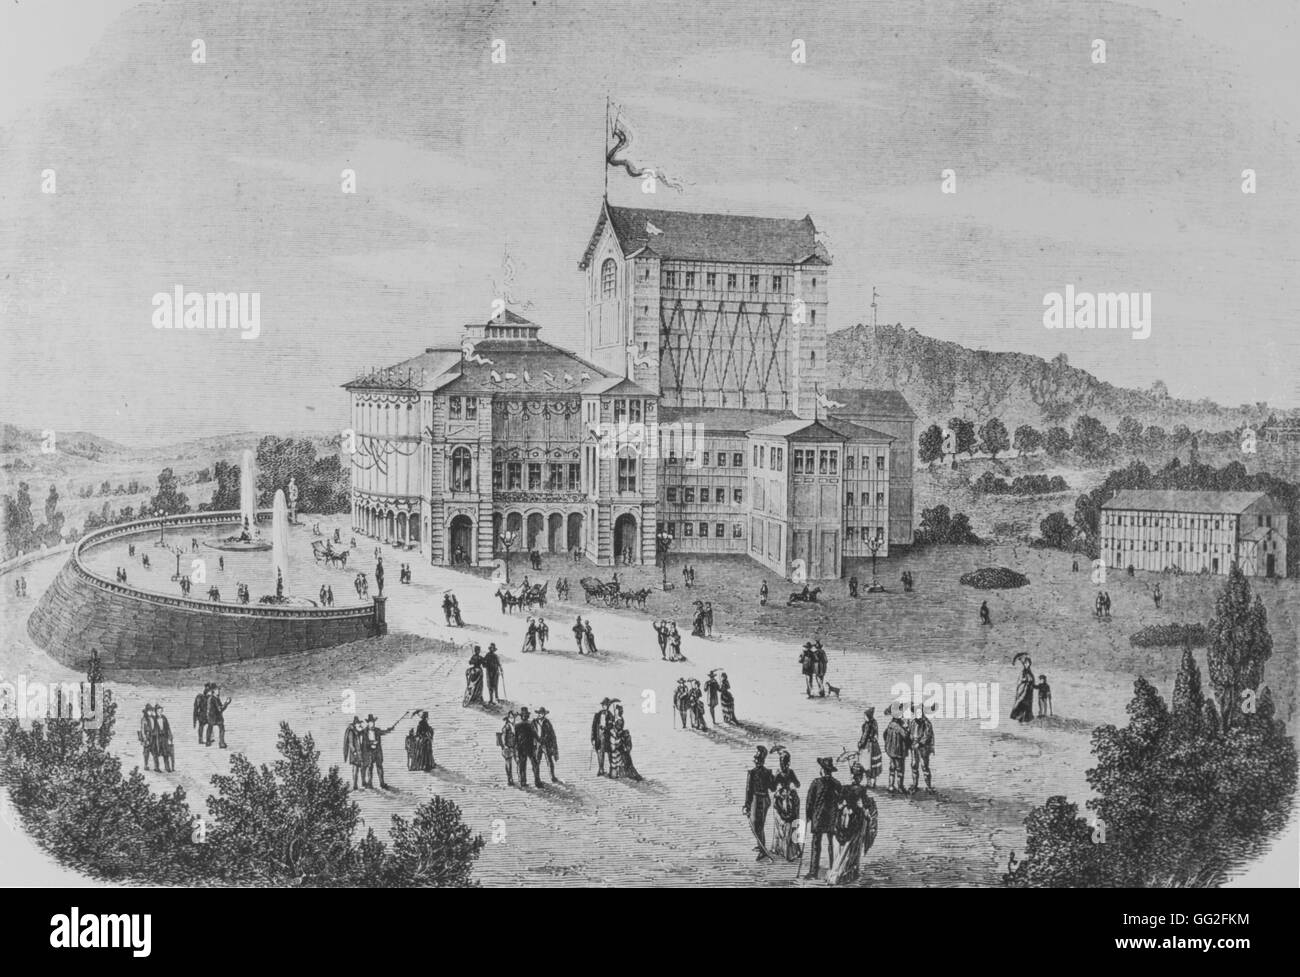 El Bayreuth Festspielhaus, ópera dedicada exclusivamente al desempeño de las óperas de Richard Wagner. Grabado realizado en 1876, el año en el que se inauguró la casa de la ópera Foto de stock